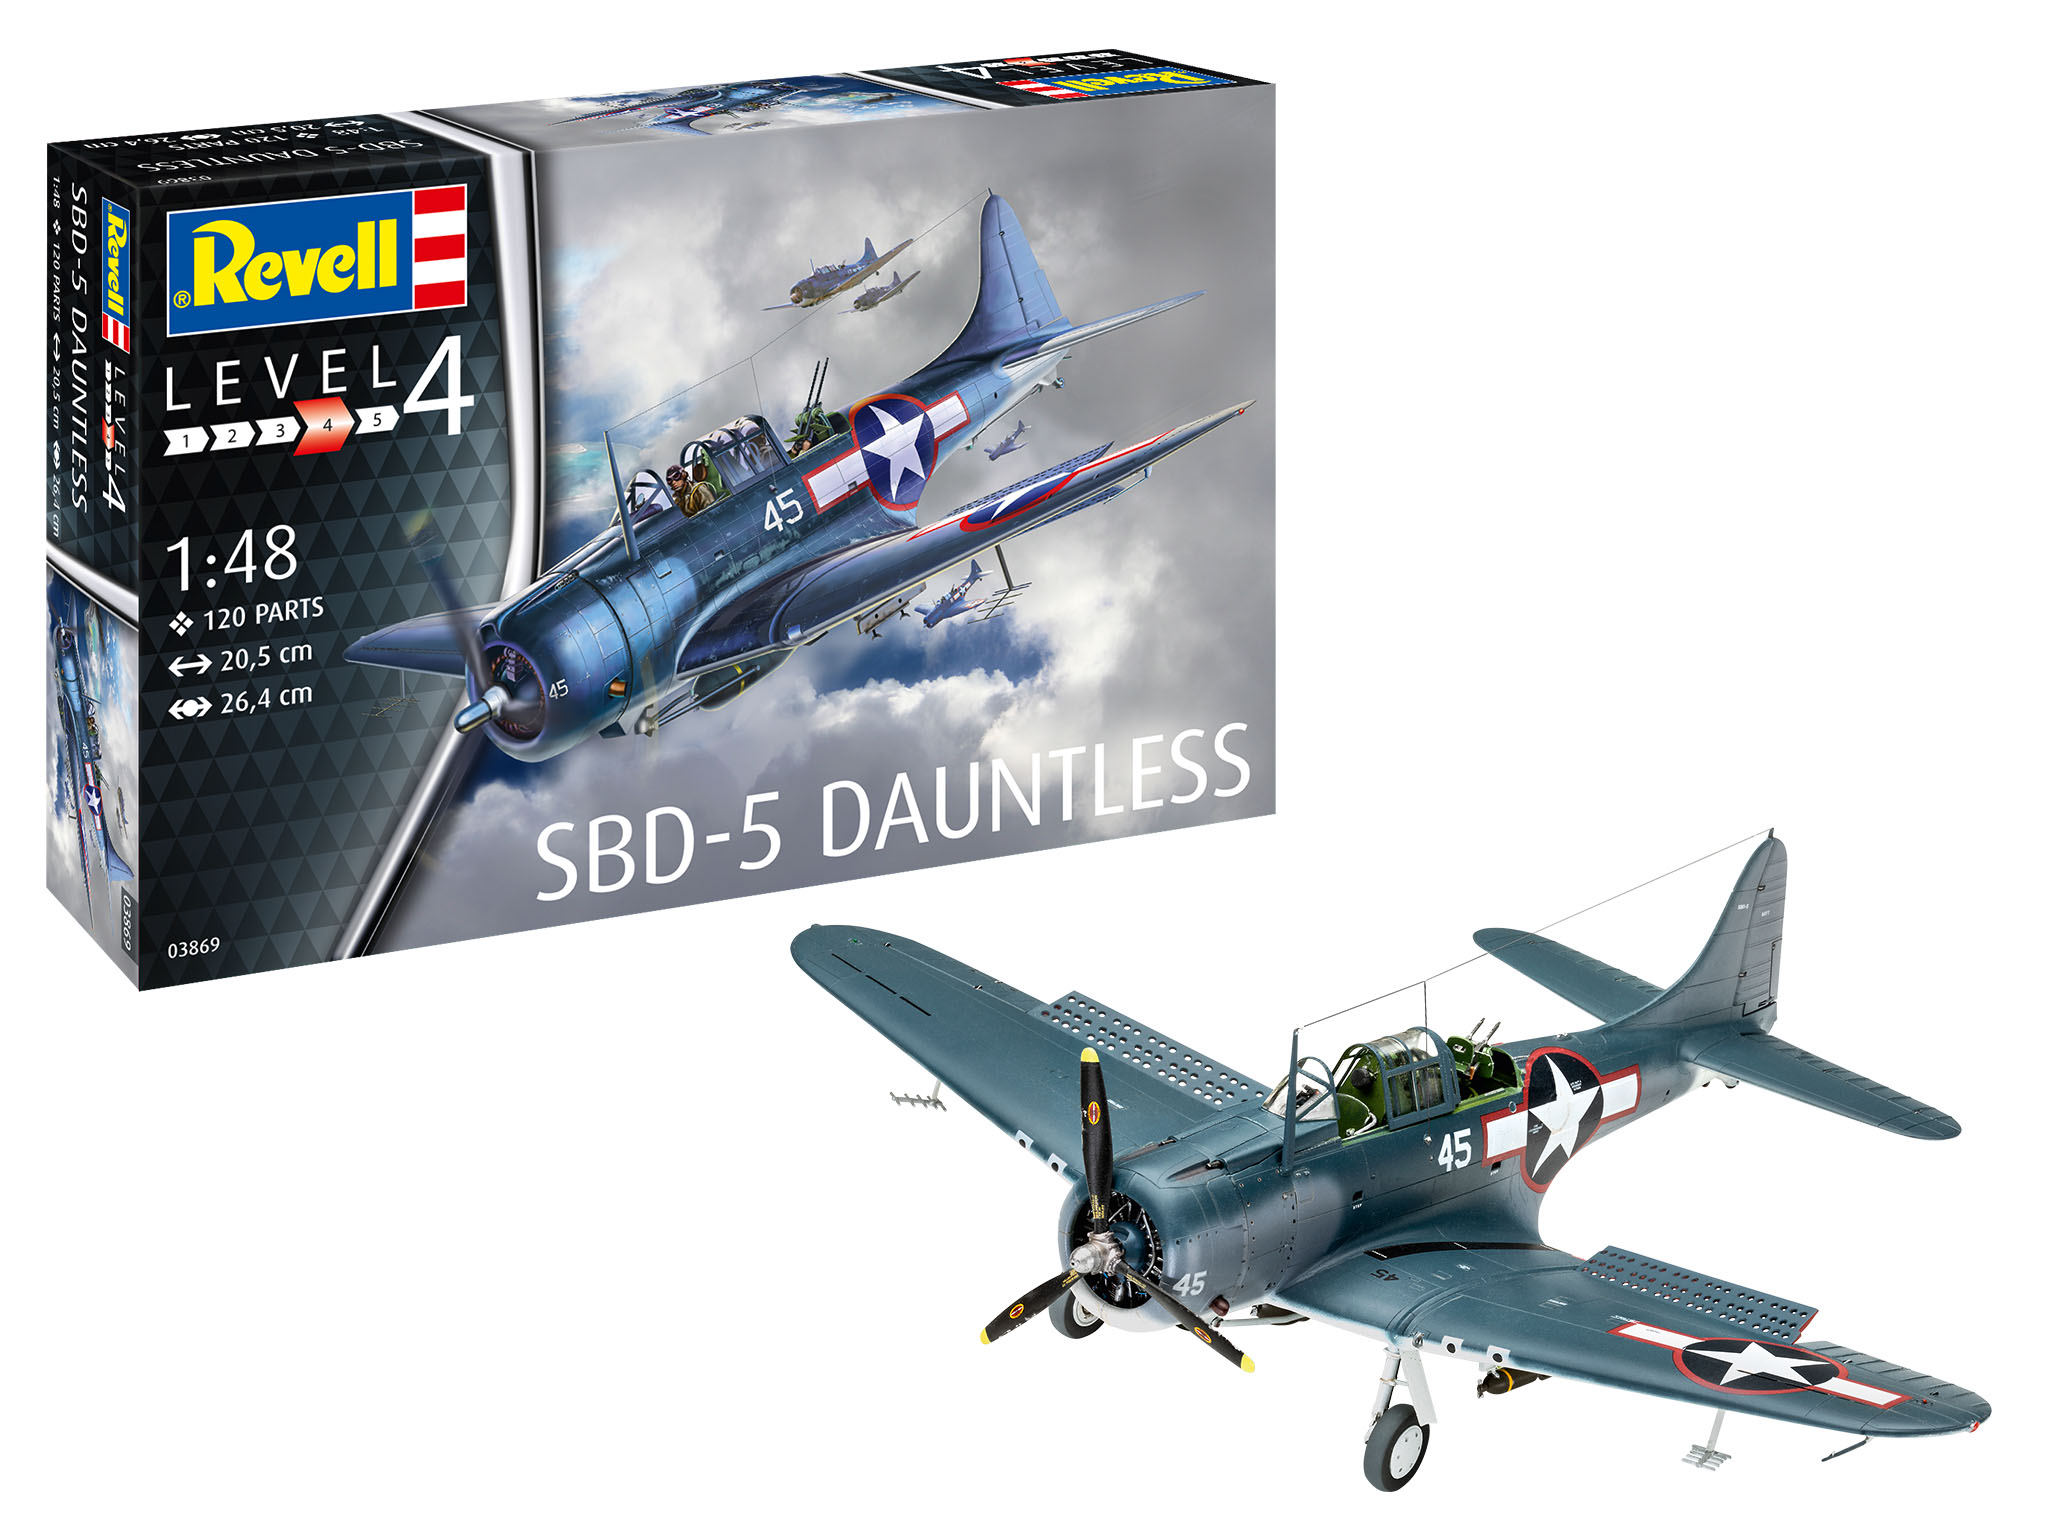 Revell SBD-5 Dauntless US Navy Dive Bomber Plastic Model Kit Scale 1:48 